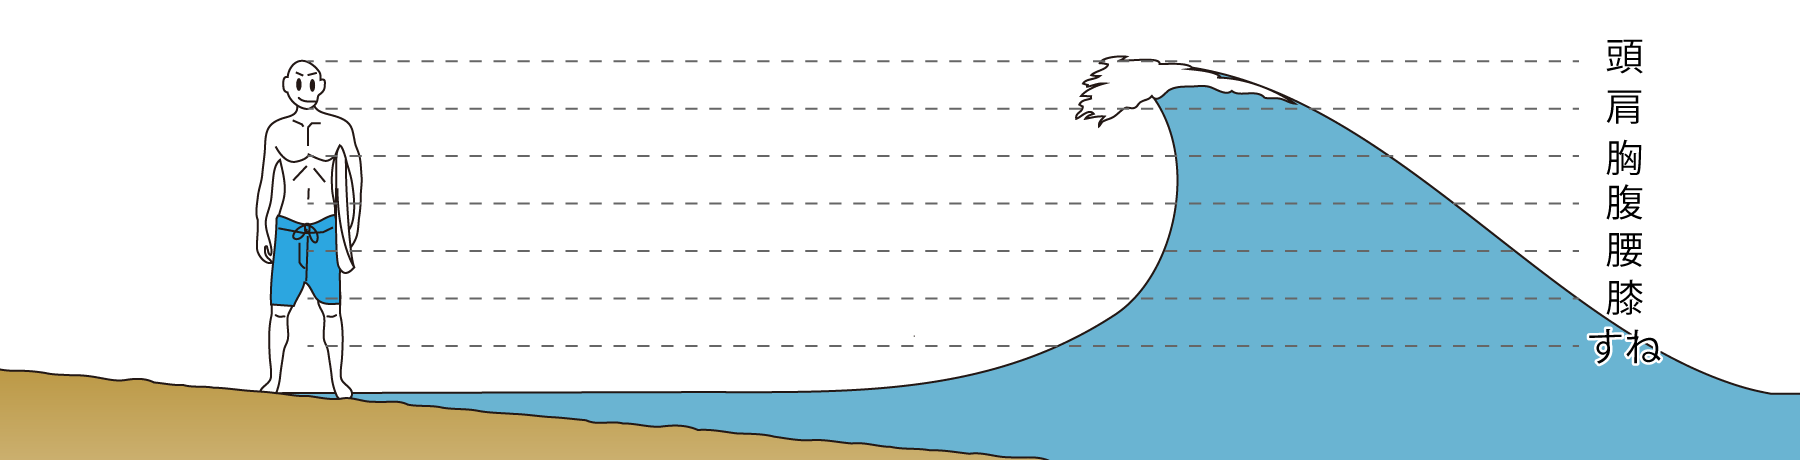 サーフィンでの波サイズの表現方法